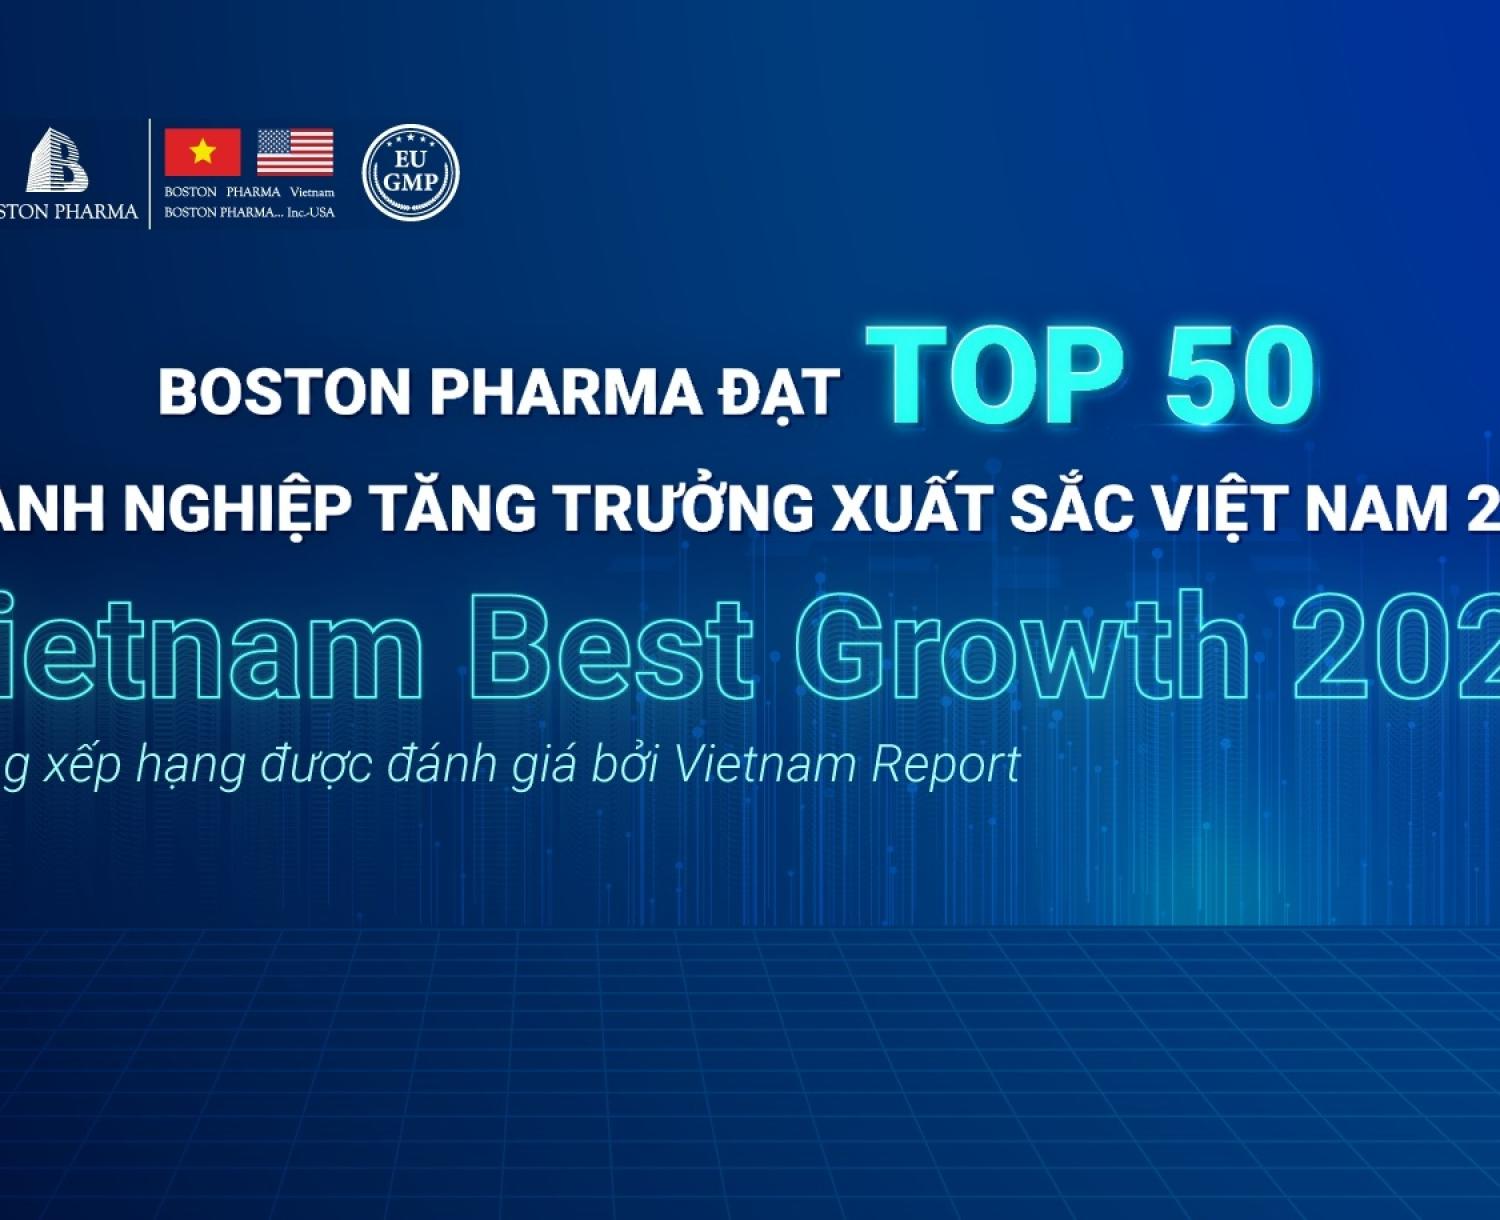 Boston Pharma vinh dự đạt “Top 50 doanh nghiệp tăng trưởng xuất sắc Việt Nam 2024”